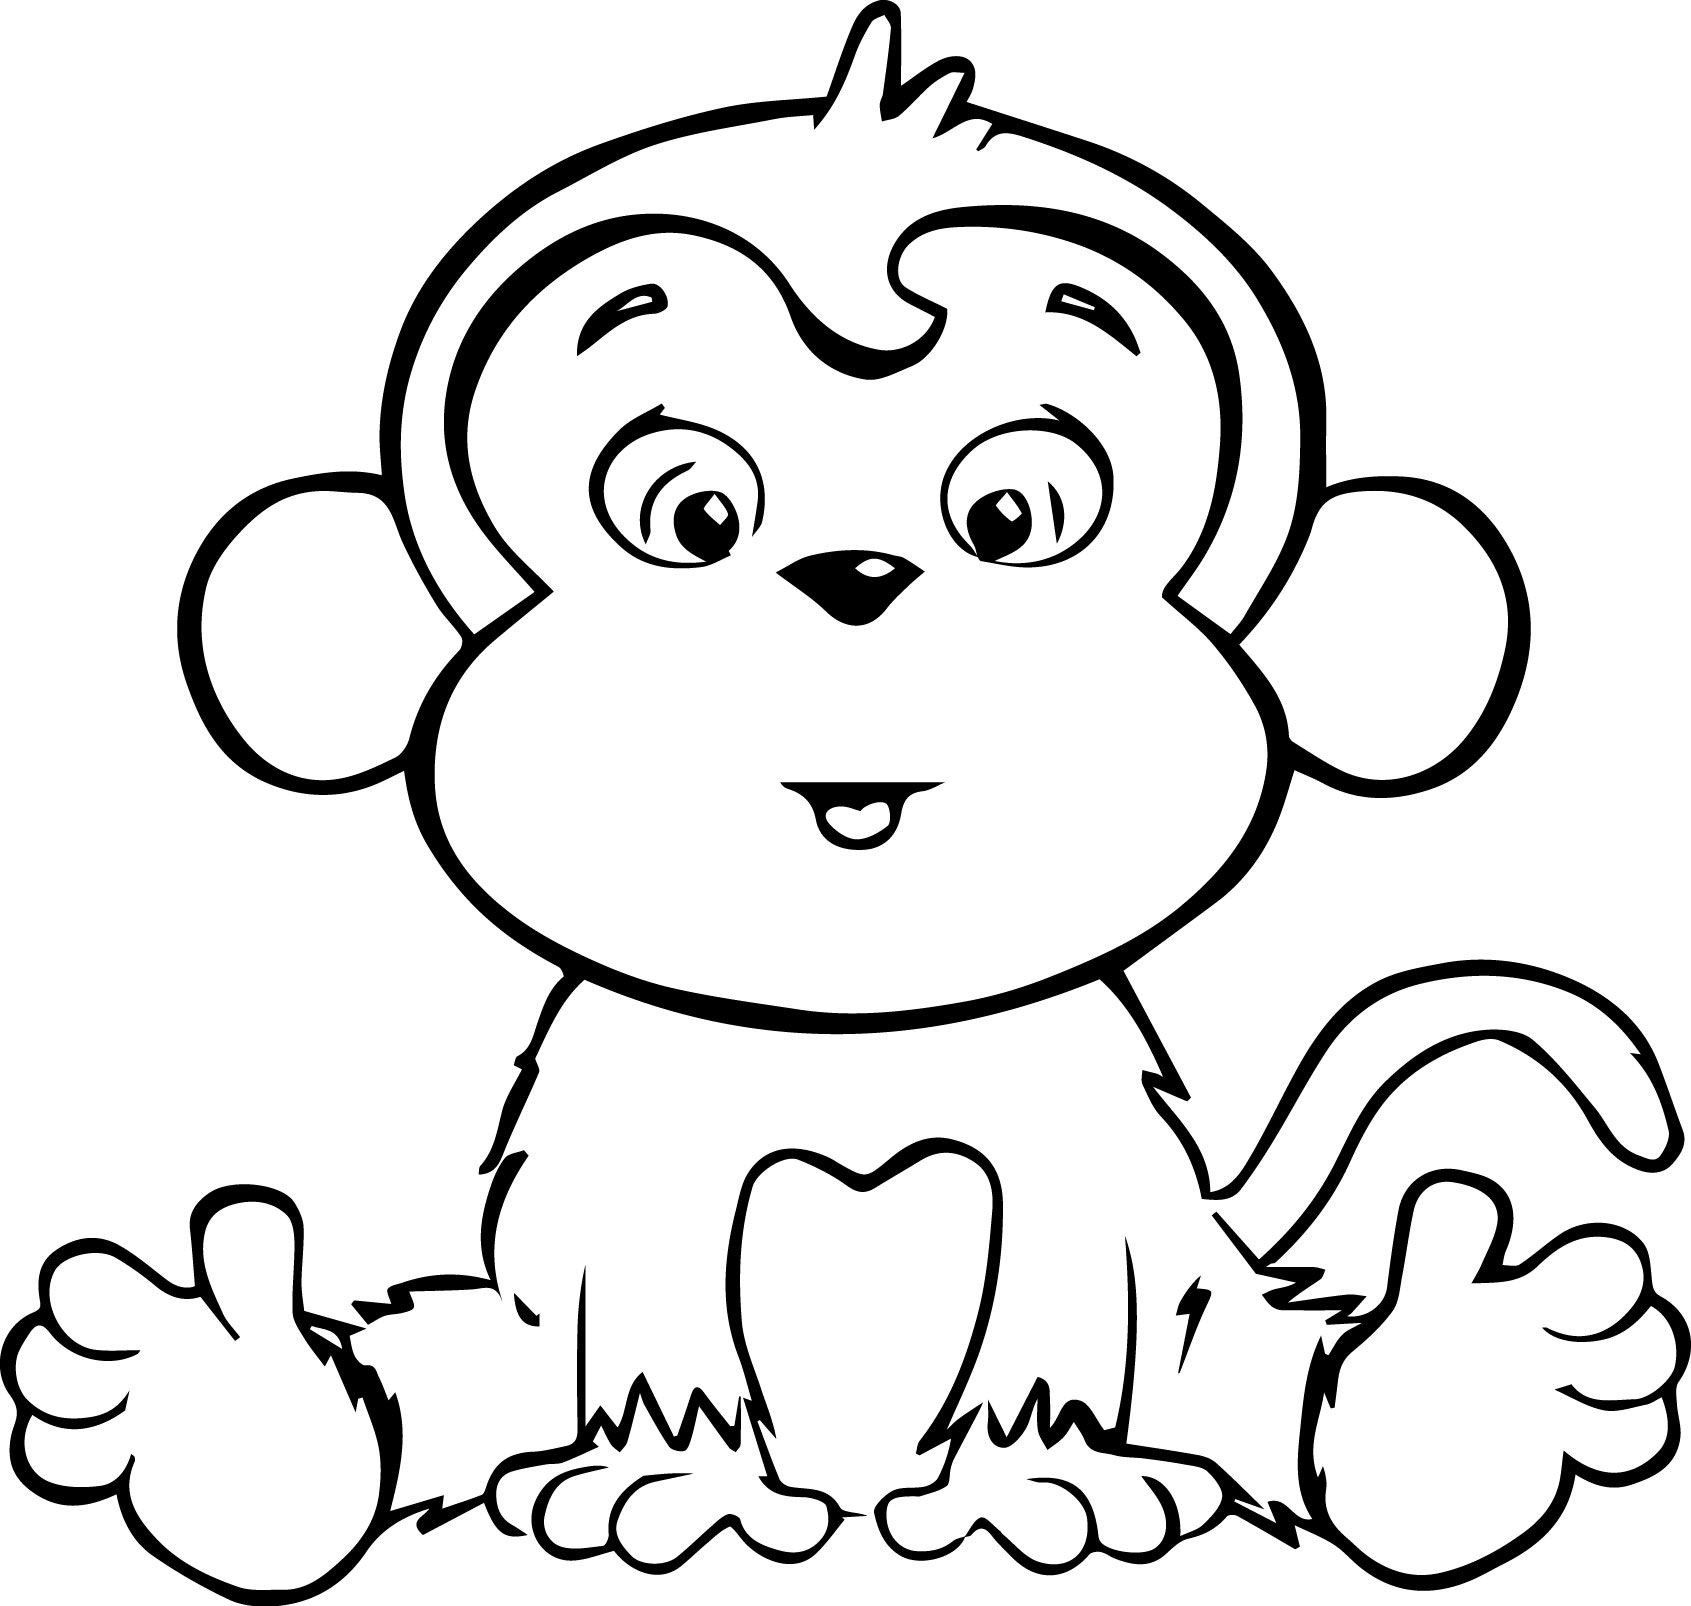 Tranh tô màu con vật sống trong rừng - Chú khỉ tinh nghịch